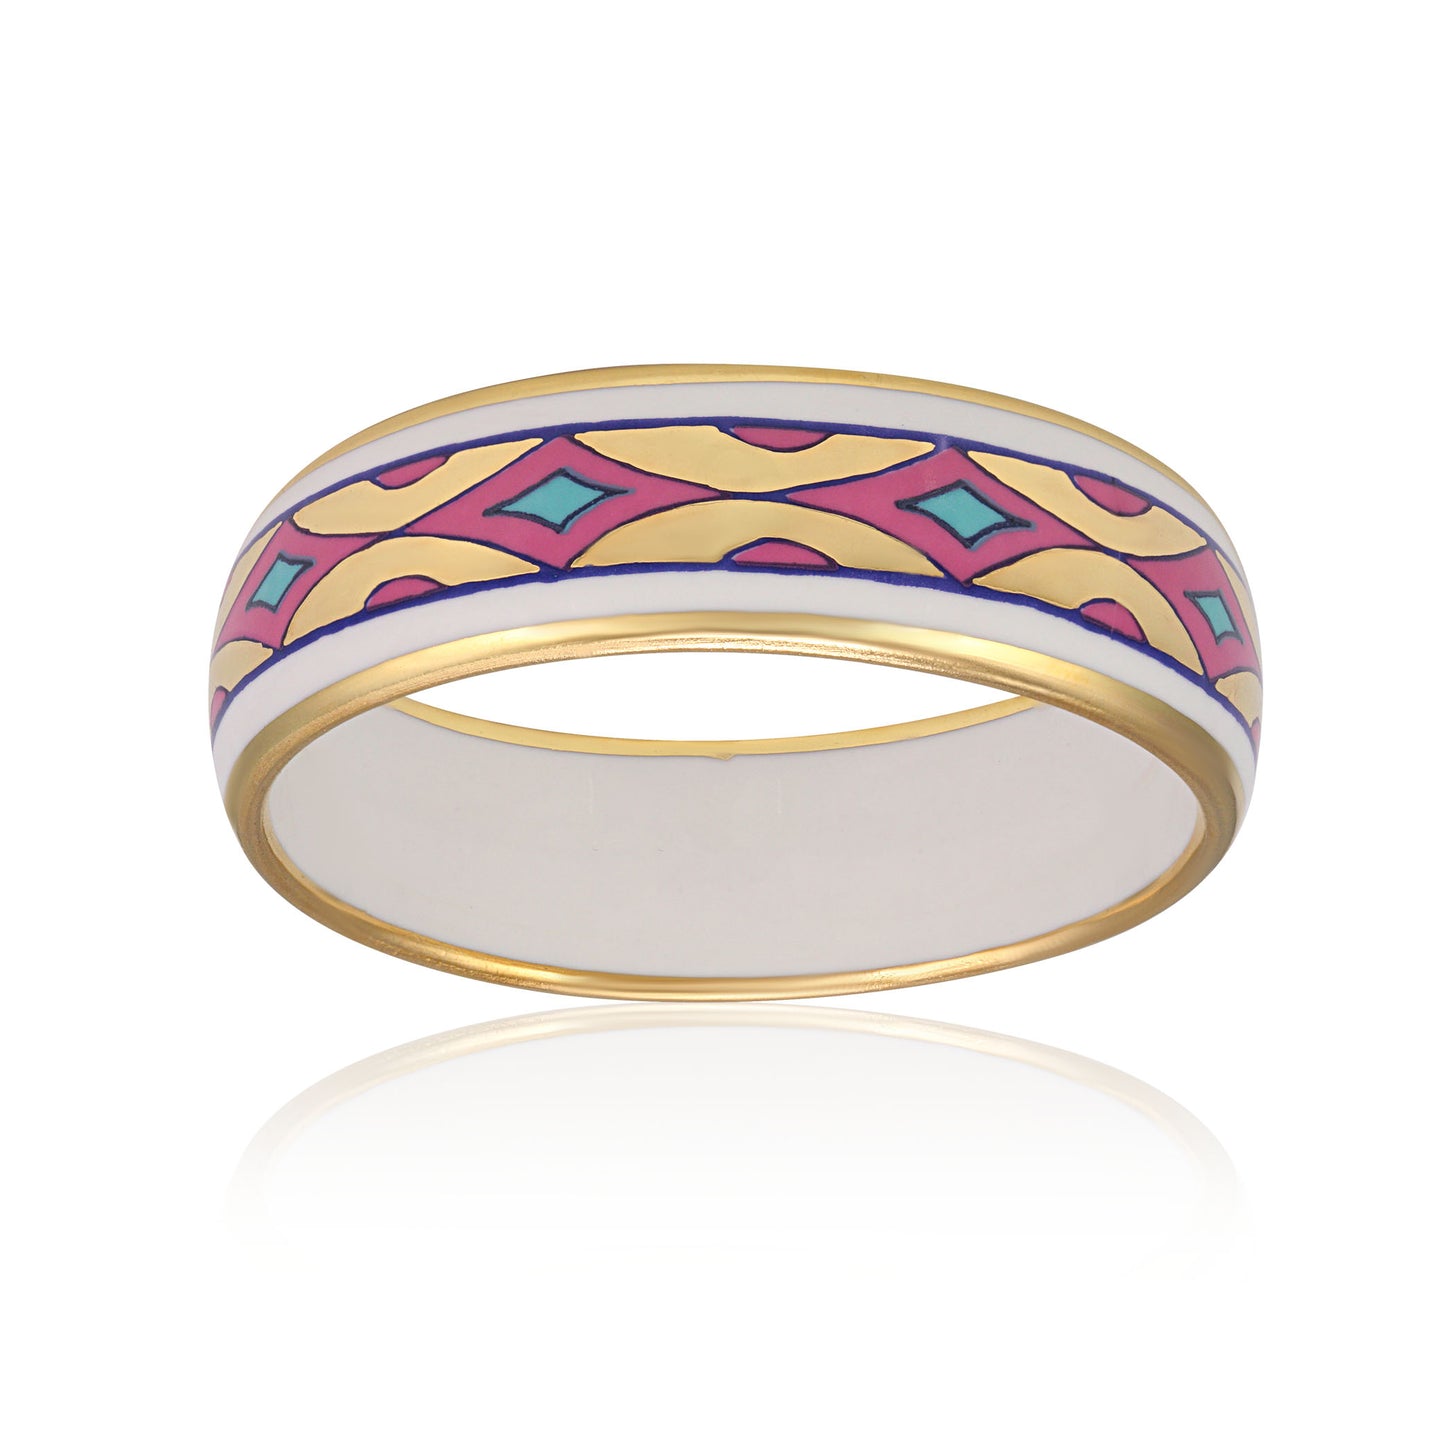 GOLD OF DESERT gold plated pink fine porcelain bracelet